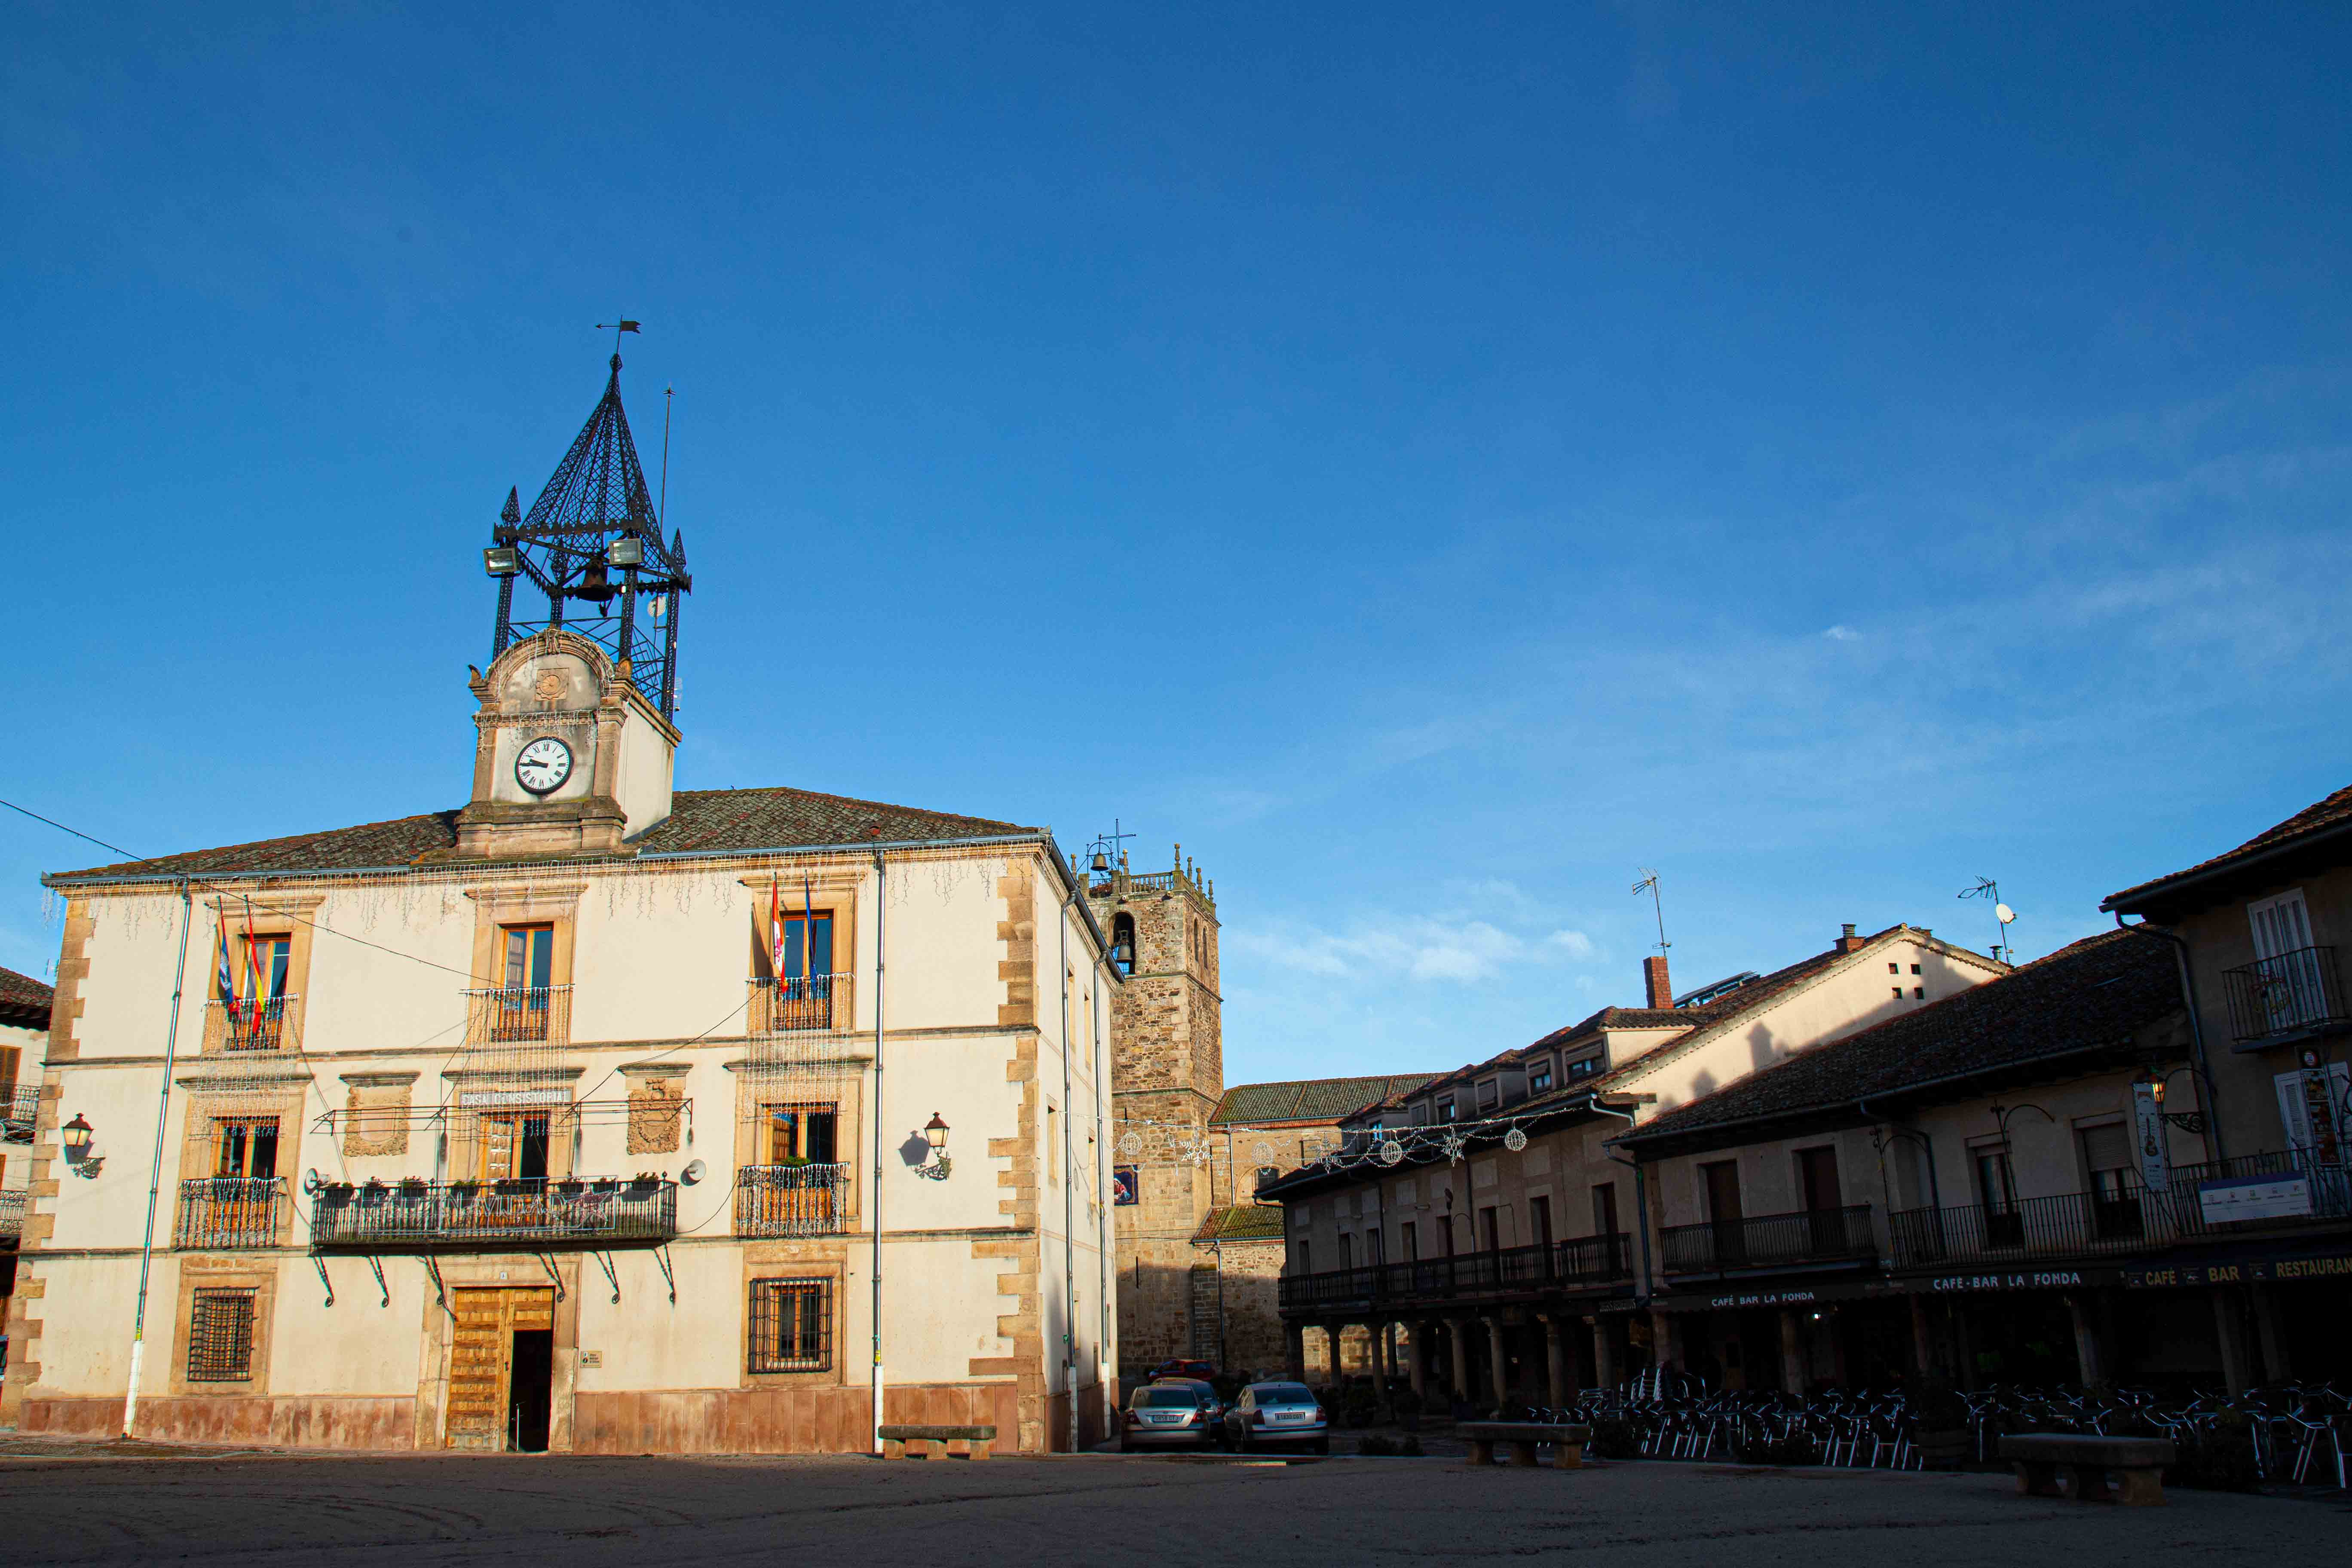  El pueblo de Segovia que parece sacado de una película Disney